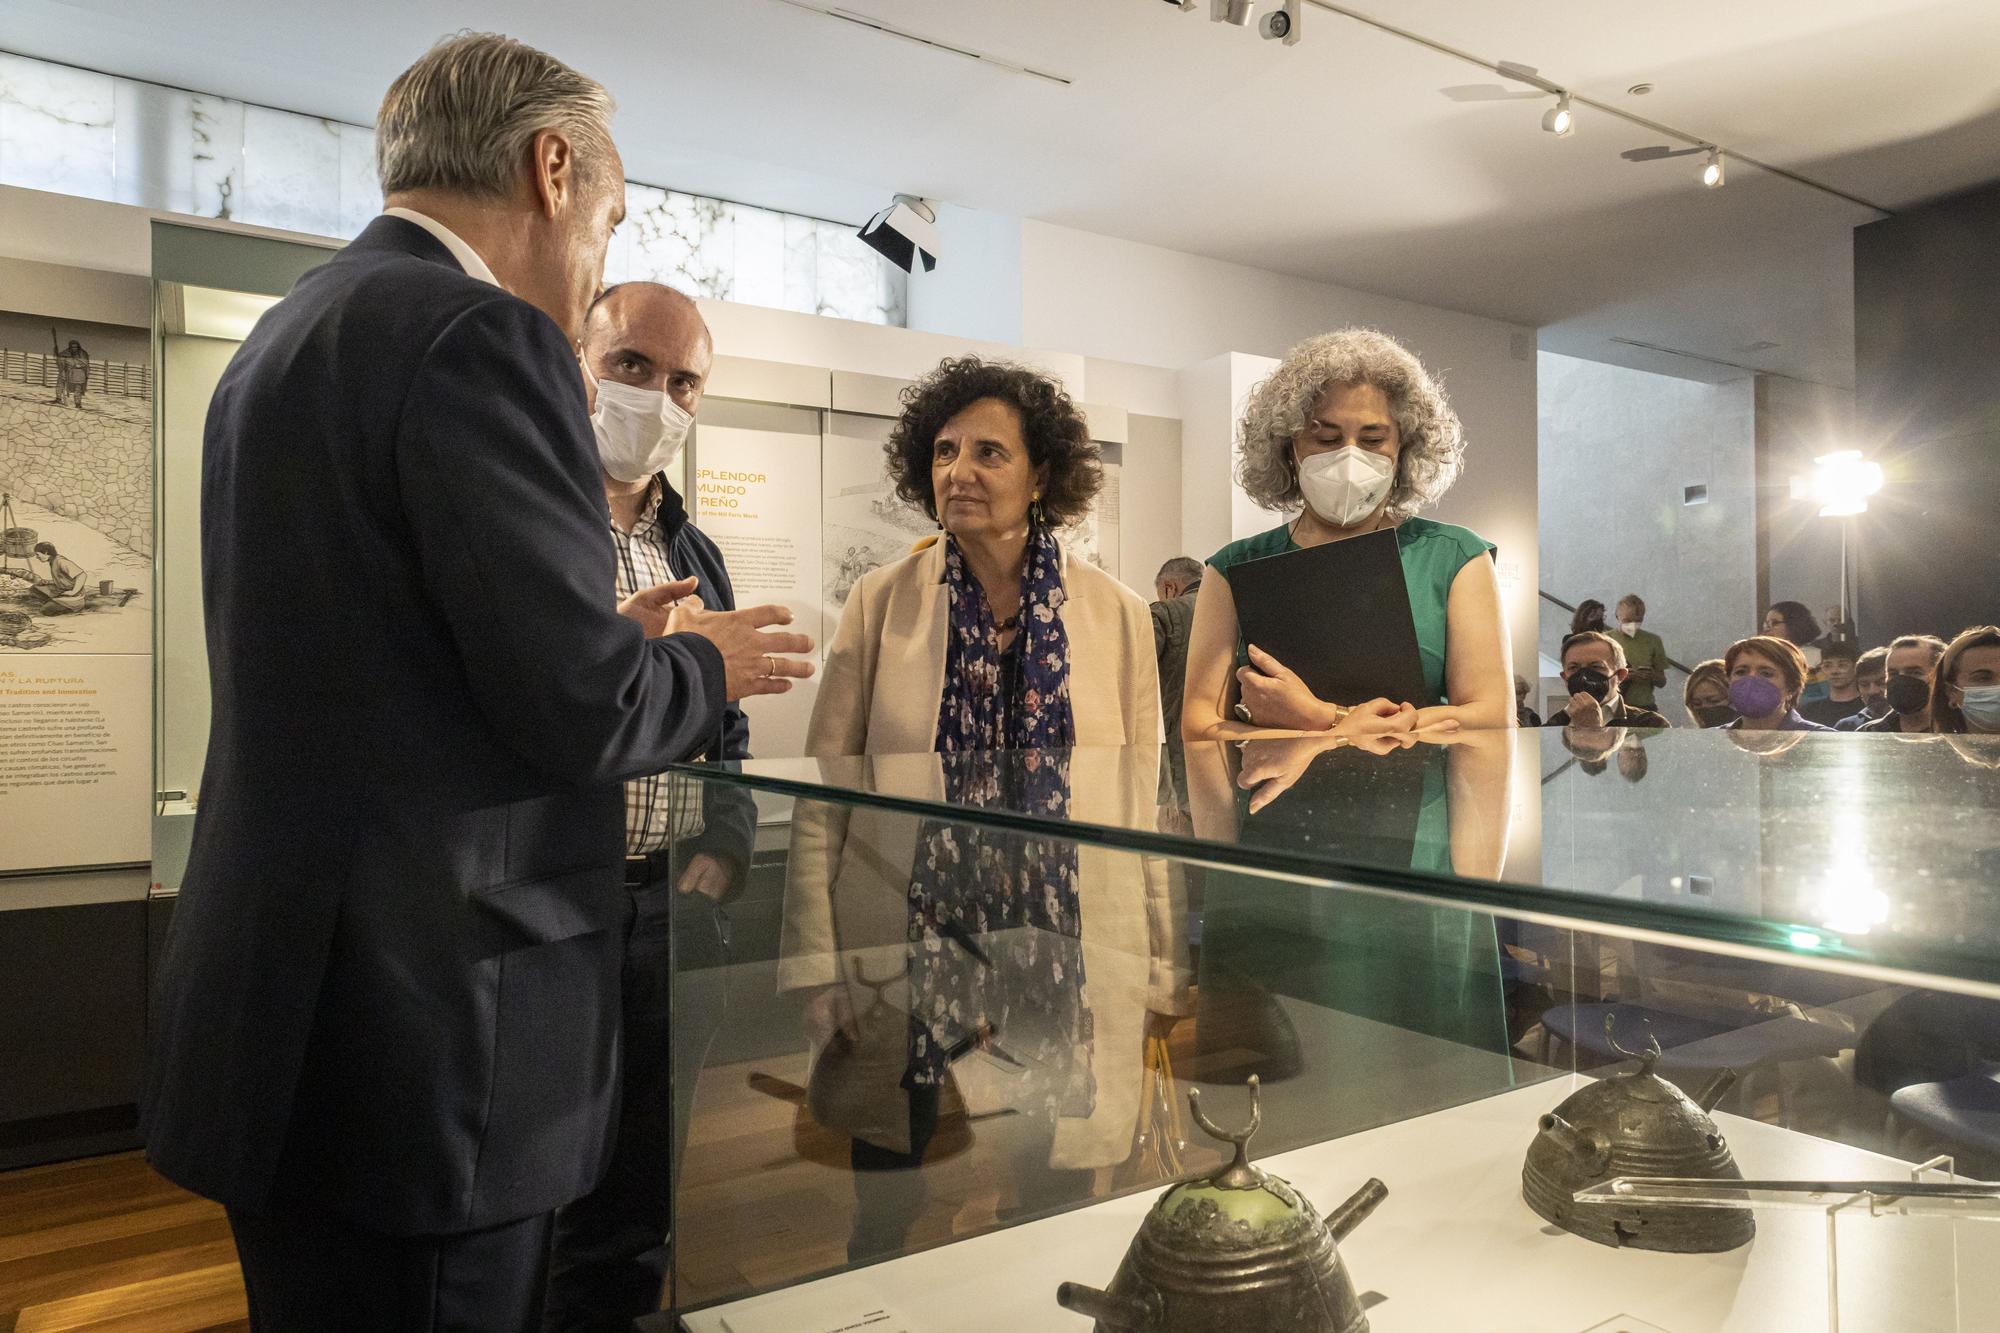 Aparece un "tesoro" arqueológico en Ribadesella: dos cascos de la Edad de Bronce